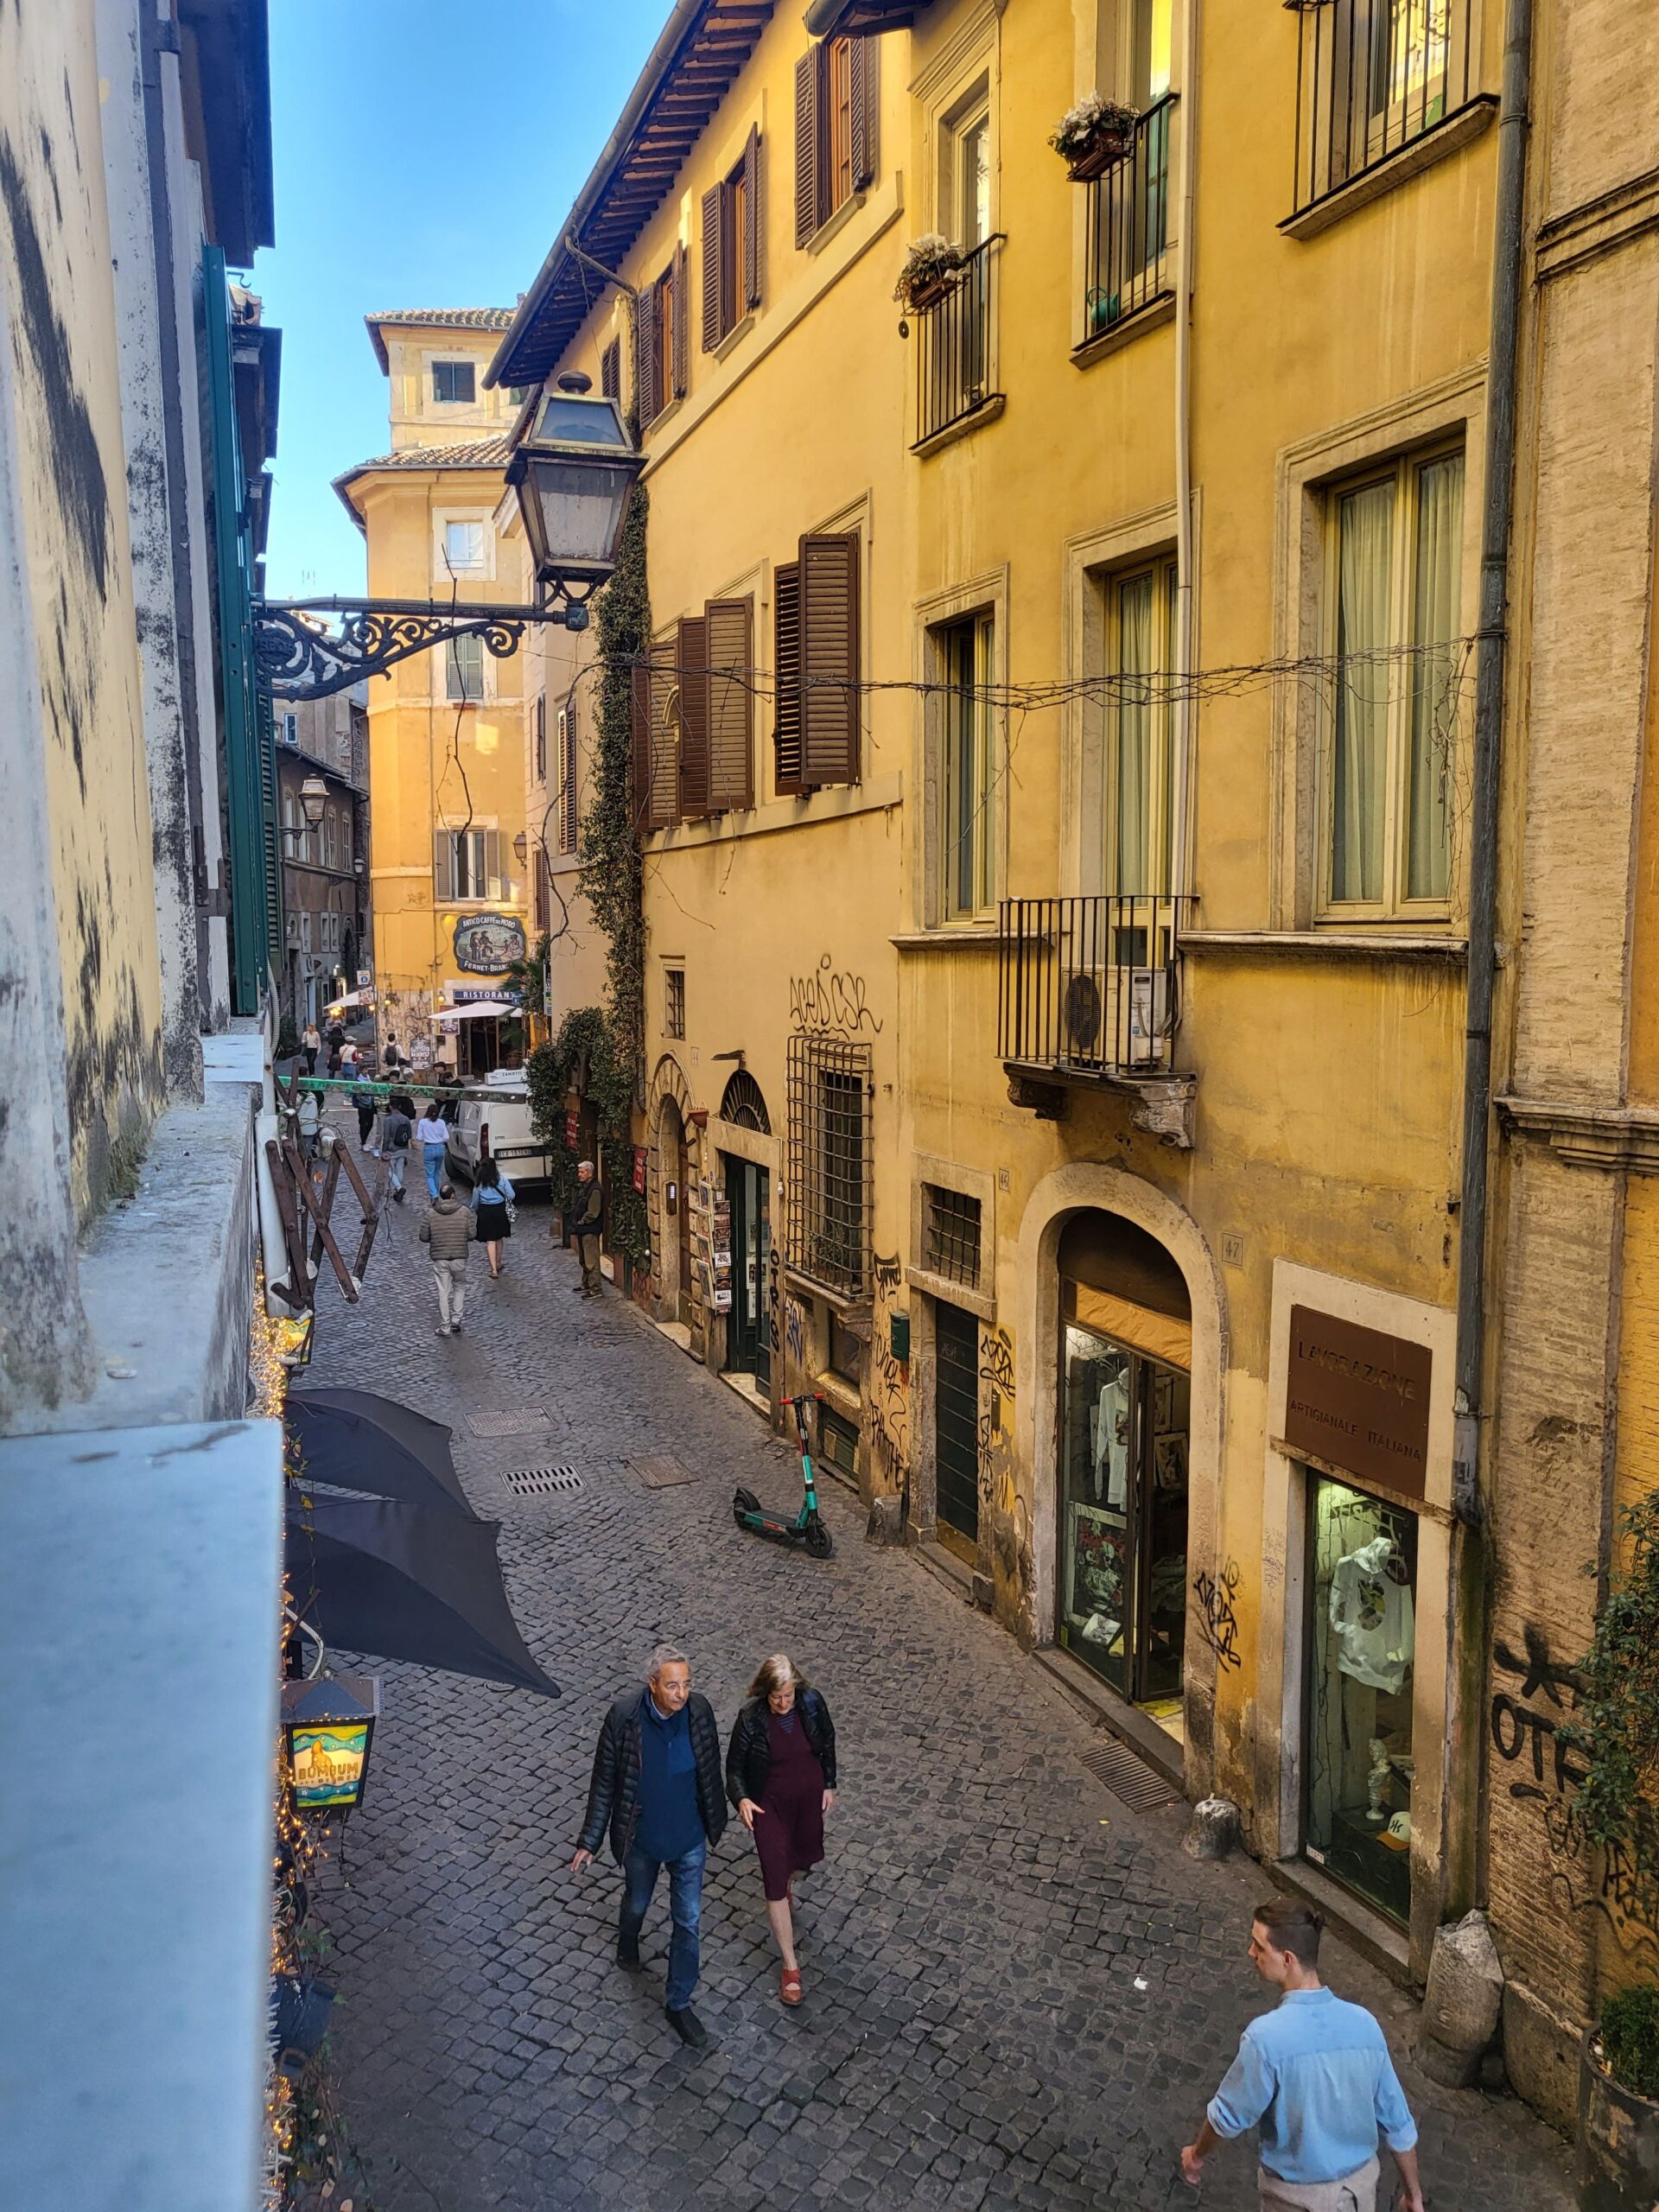 Vista diurna de um ponto elevado em Trastevere, Roma, exibindo a arquitetura histórica com edifícios em tons de ocre e janelas com venezianas, uma rua estreita abaixo movimentada por pedestres, oferecendo um vislumbre da vida cotidiana na cidade.